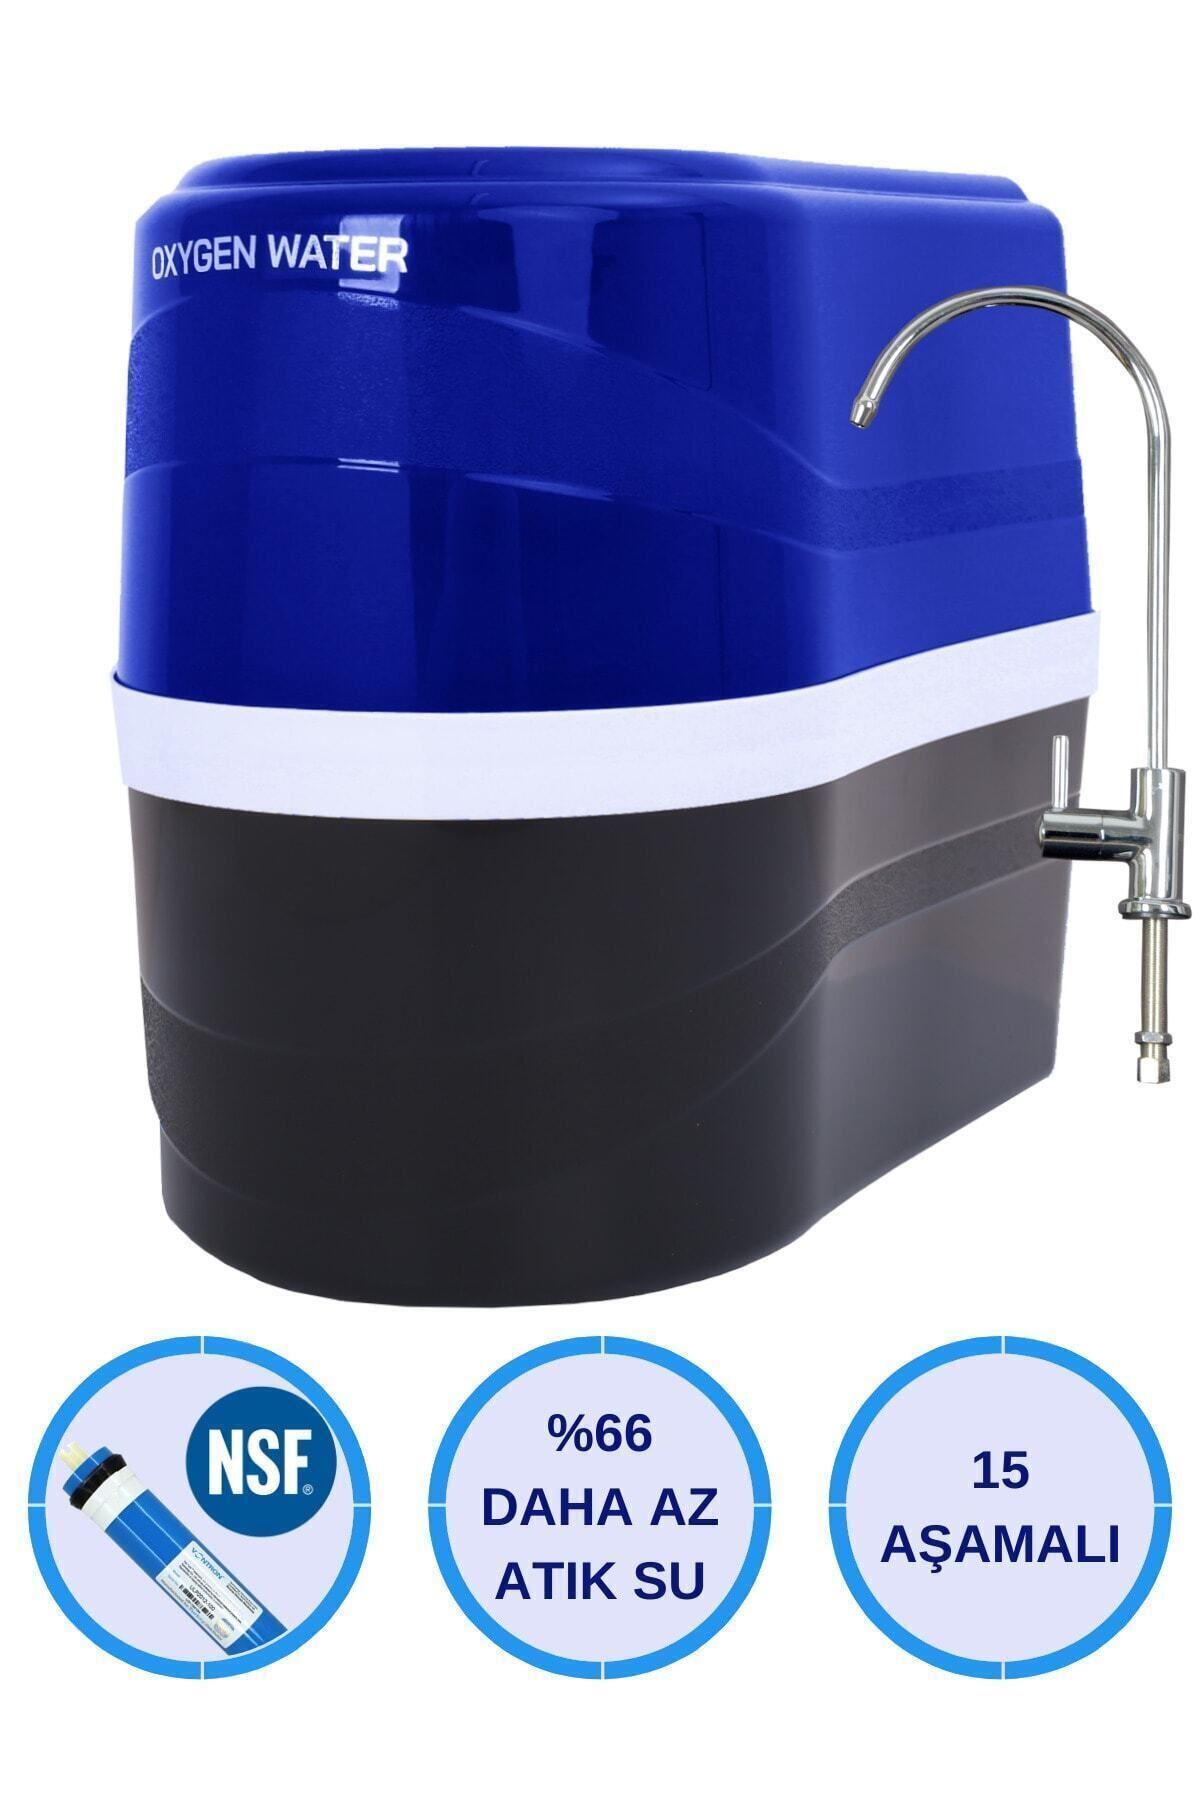 OXYGEN WATER Premium 15 Aşamalı Nsf Onaylı Antibakteriyel Çelik Su Tanklı Su Arıtma Cihazı